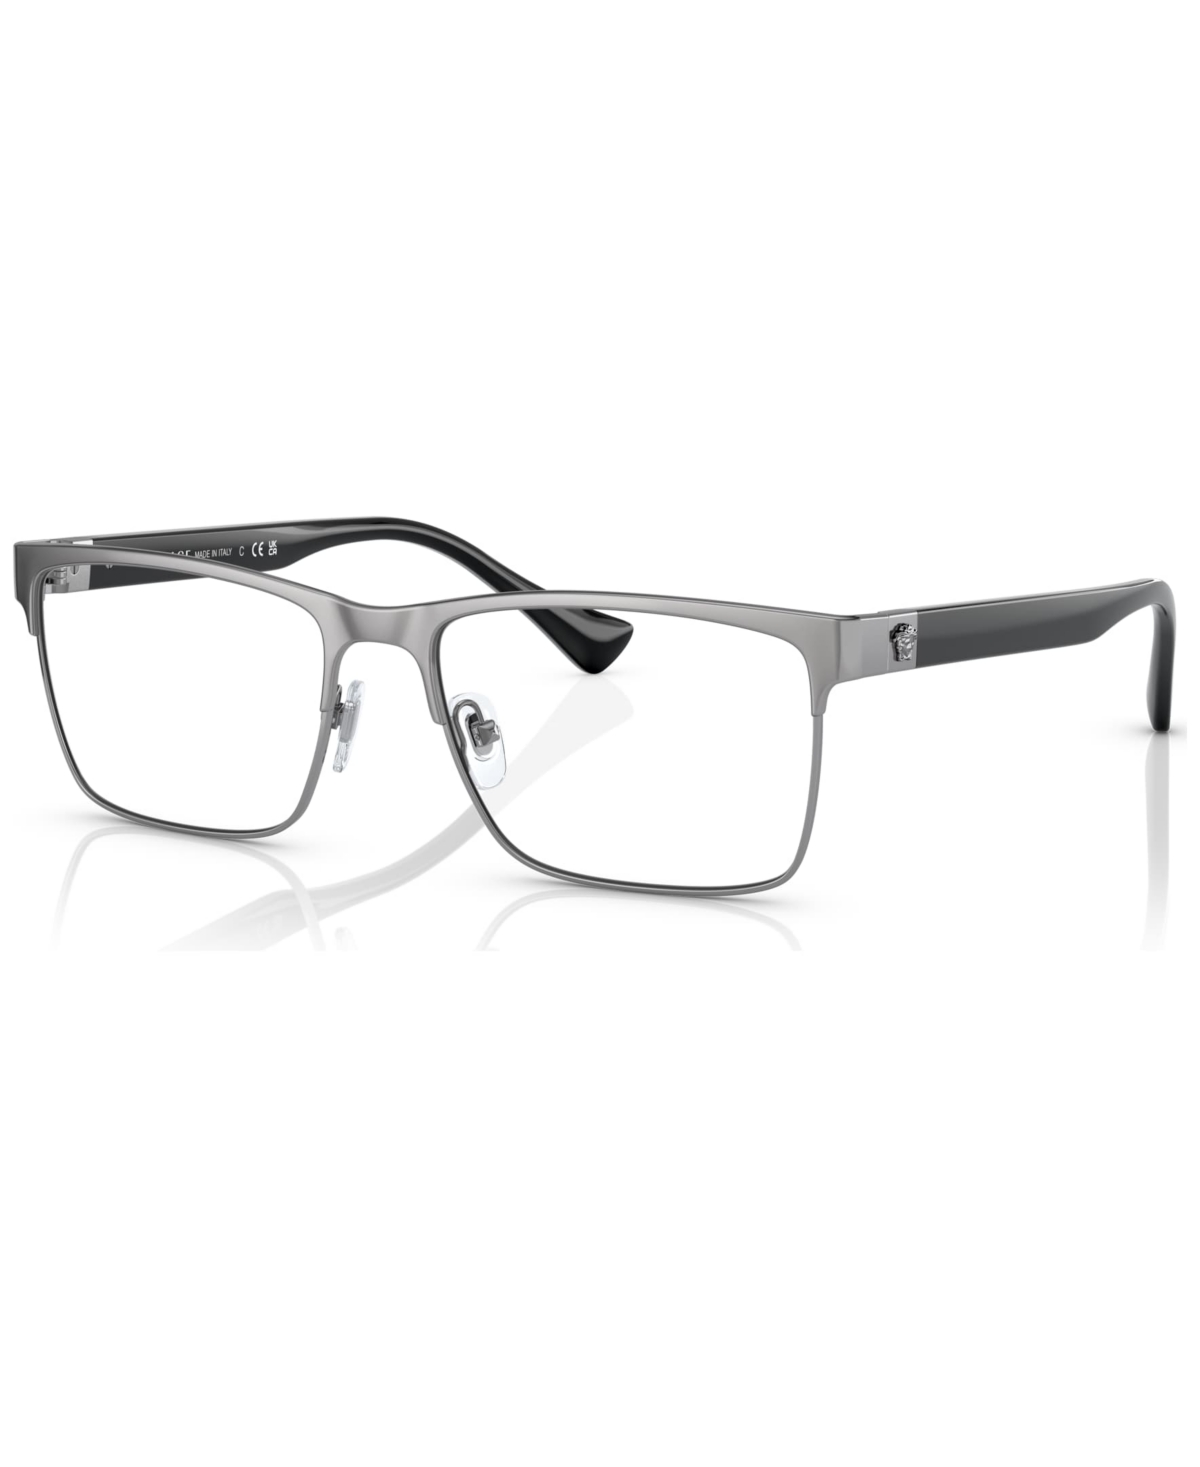 Men's Rectangle Eyeglasses, VE128556-o - Gunmetal